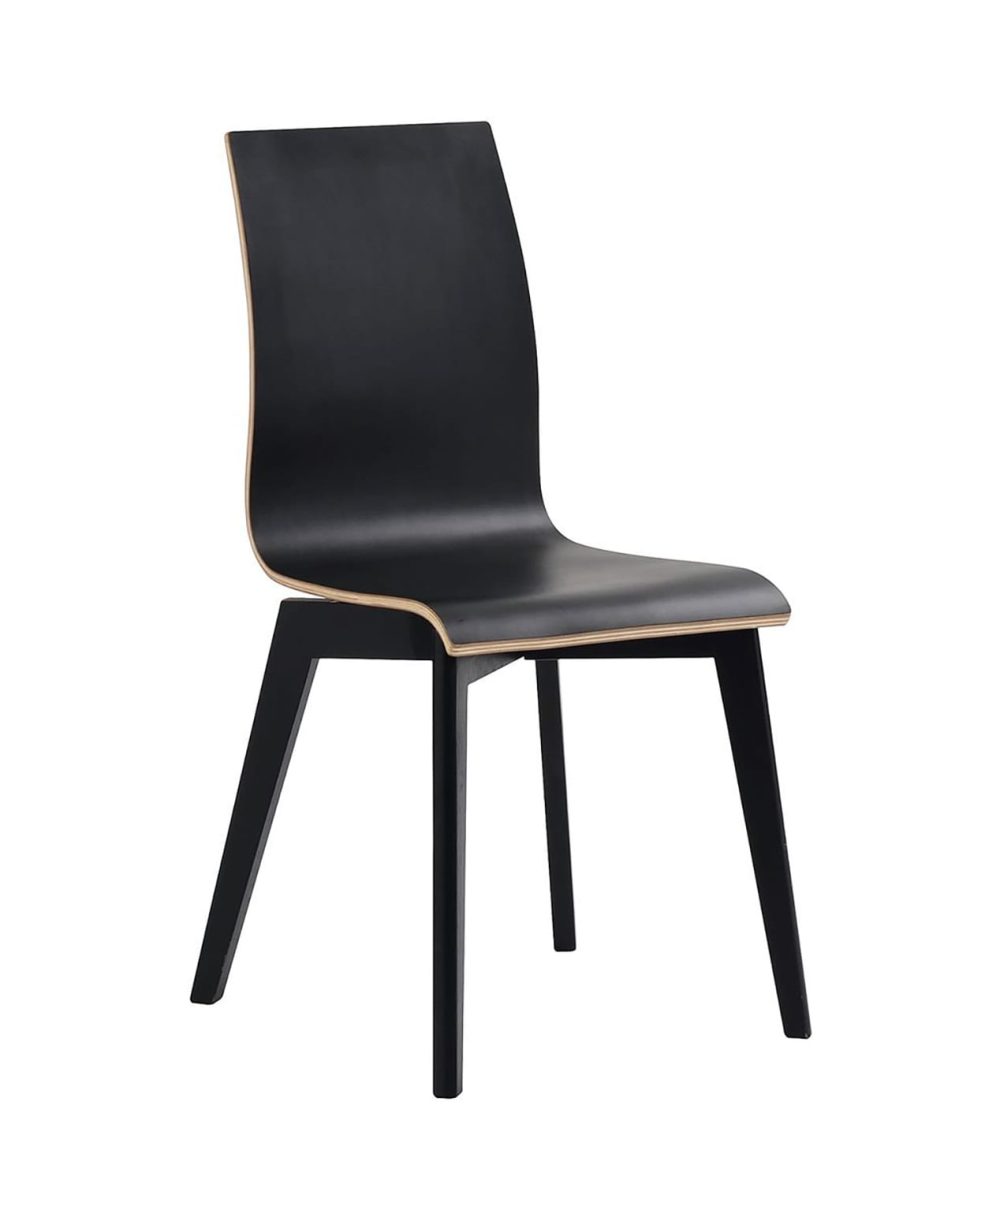 aniyah-chair-black-blac-kbase-profile.jpg